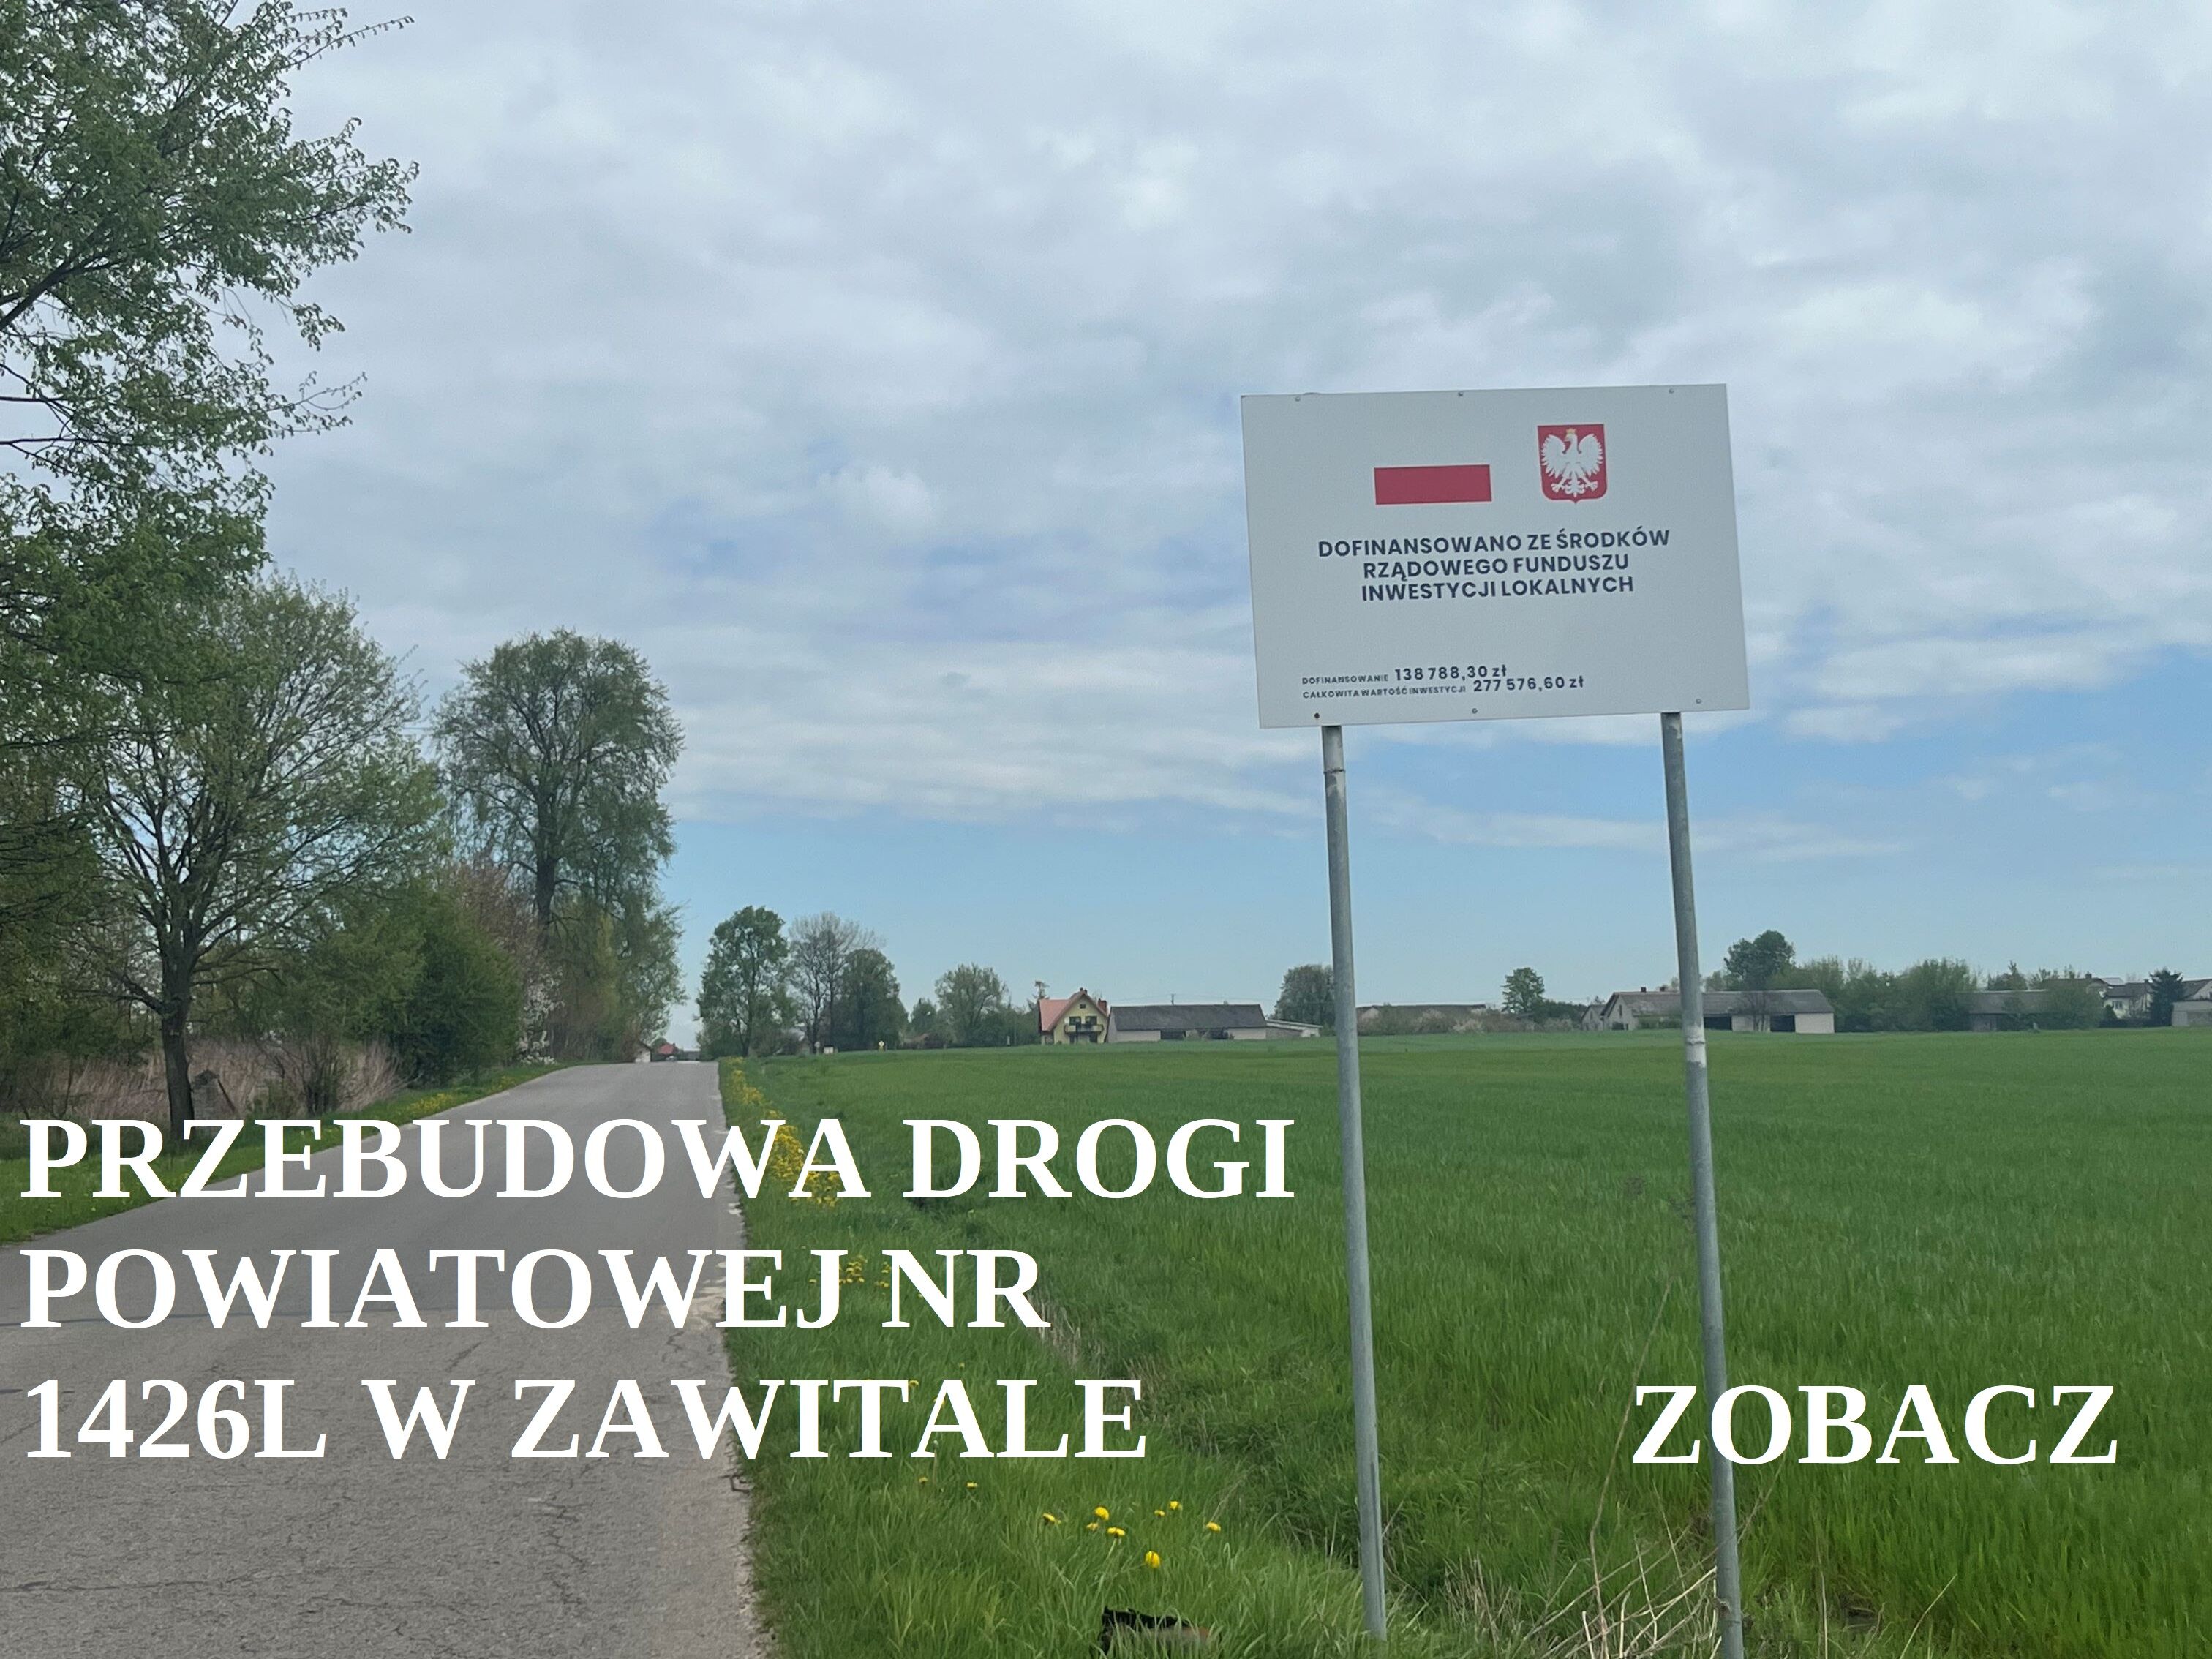 Tablica informacyjna przy drodze wiejskiej o przebudowie drogi powiatowej, zielone pola i rozproszone budynki w tle, niebo z chmurami.